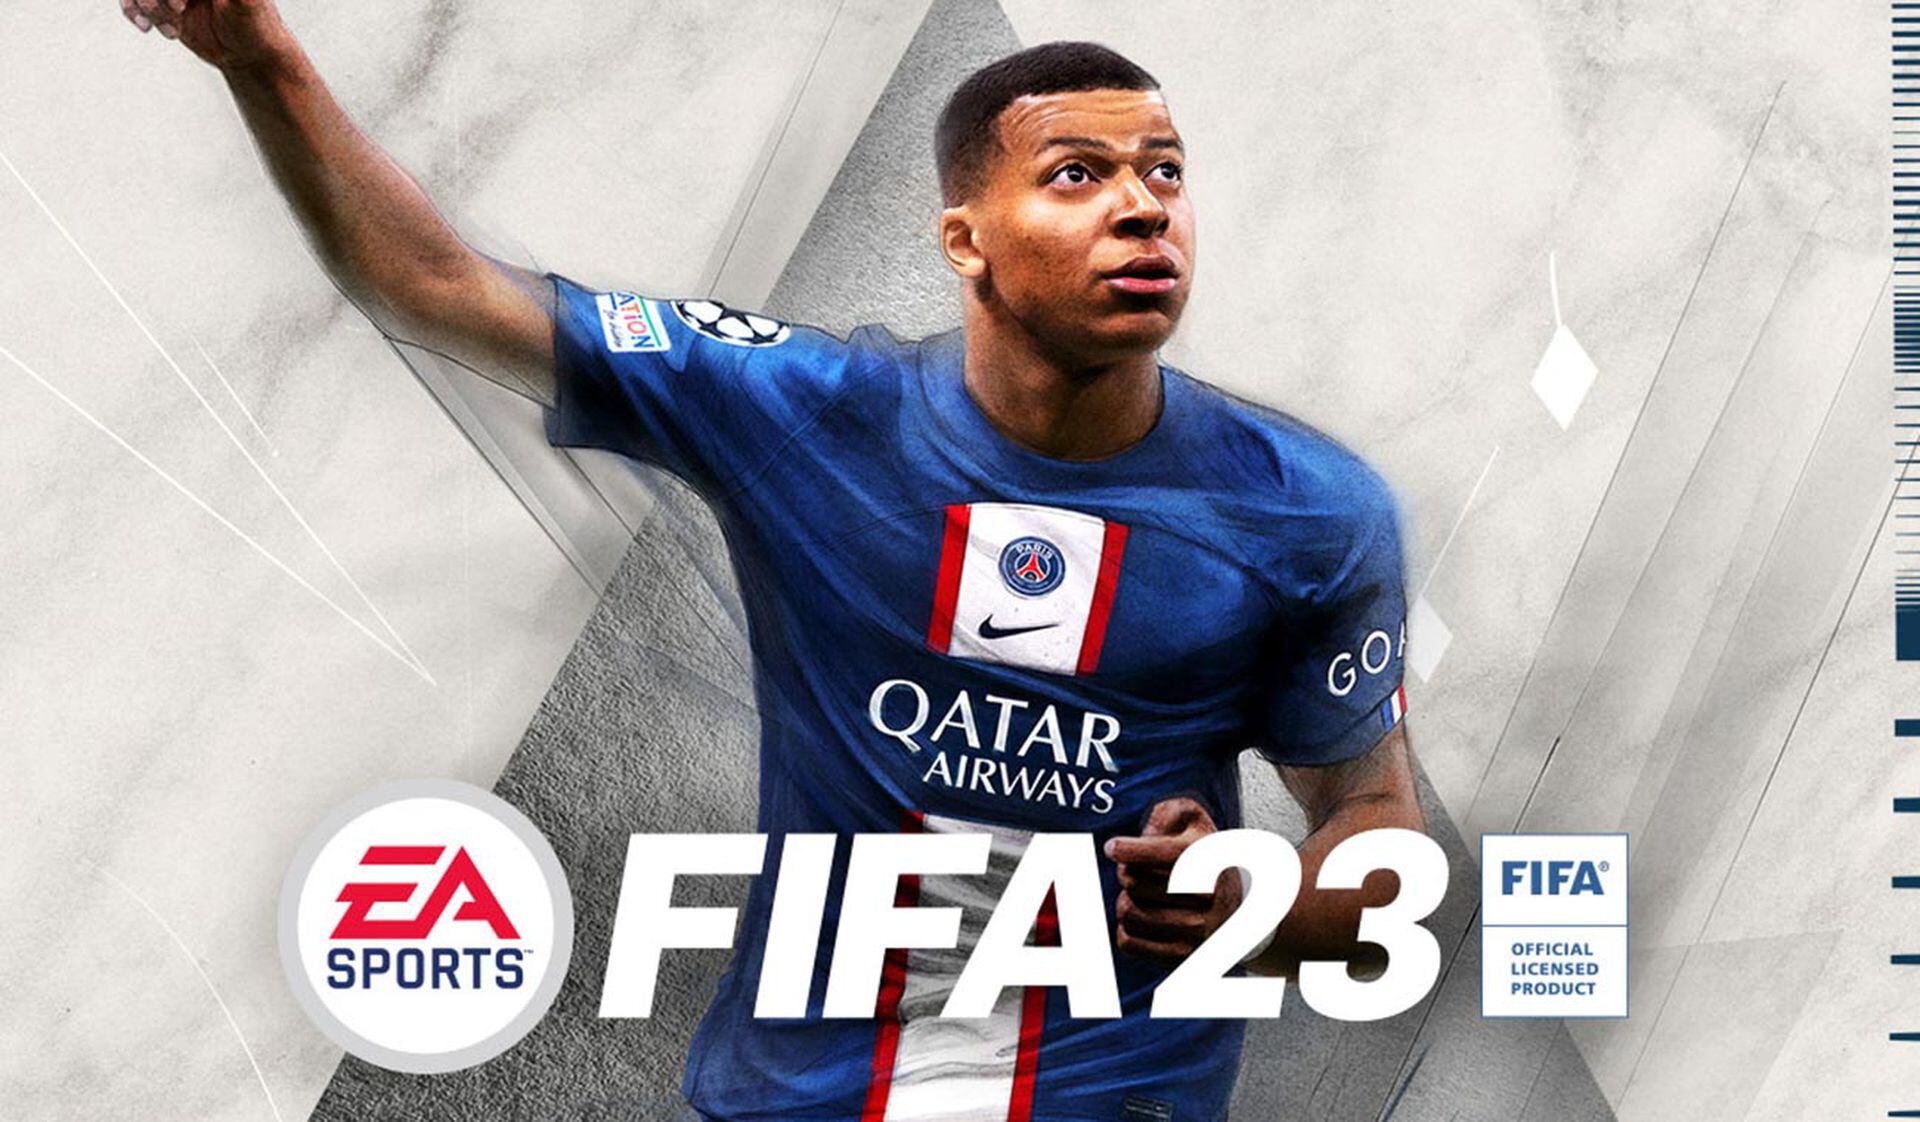 FIFA 23  Las cuatro novedades más importantes en Clubes Pro - TyC Sports